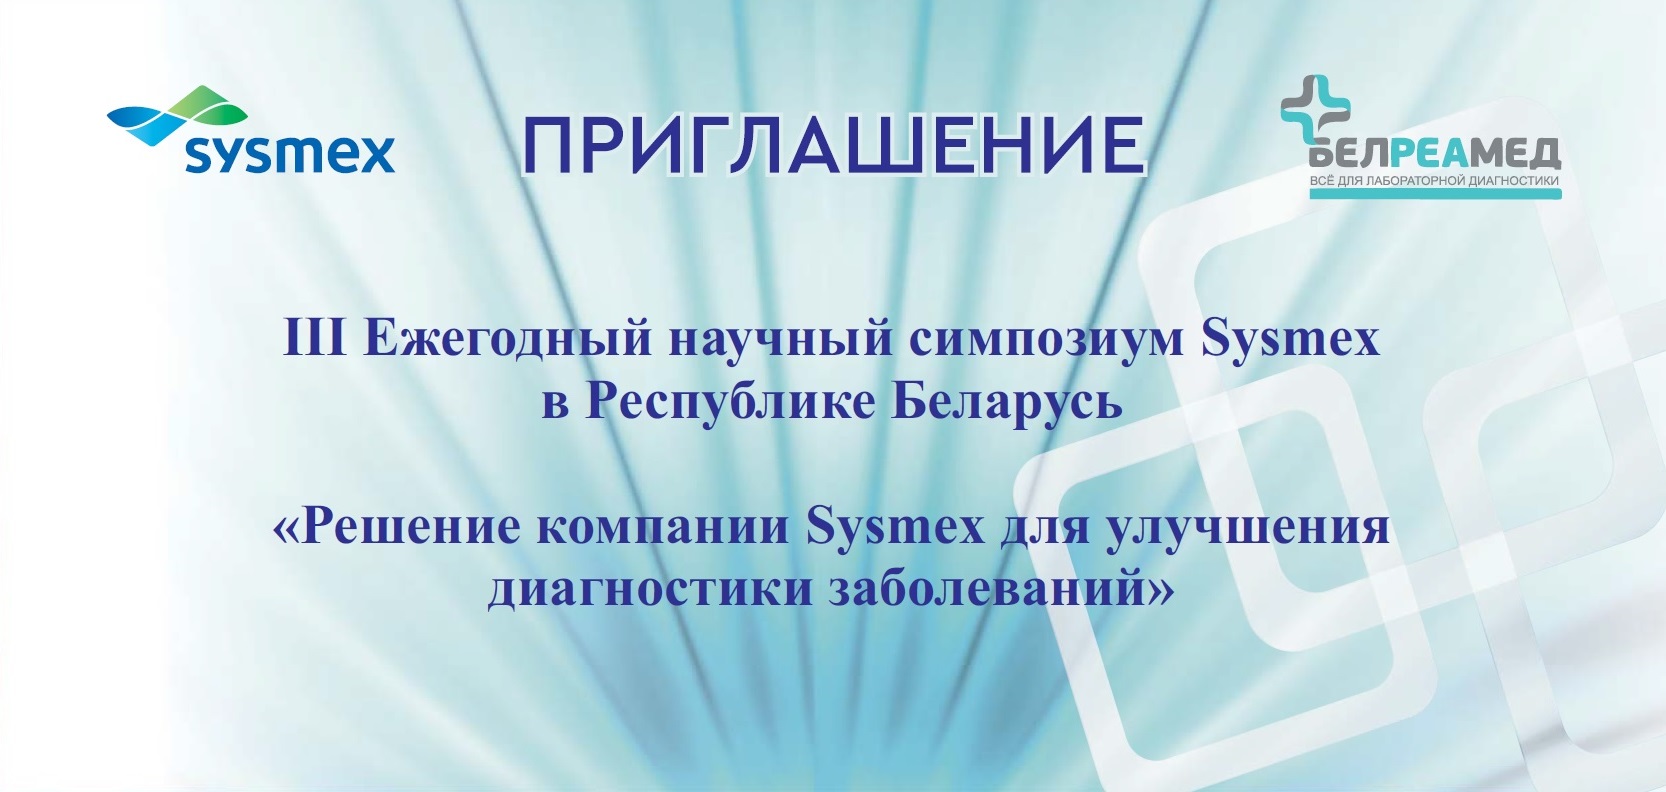 III Ежегодный научный Симпозиум Sysmex в Республике Беларусь